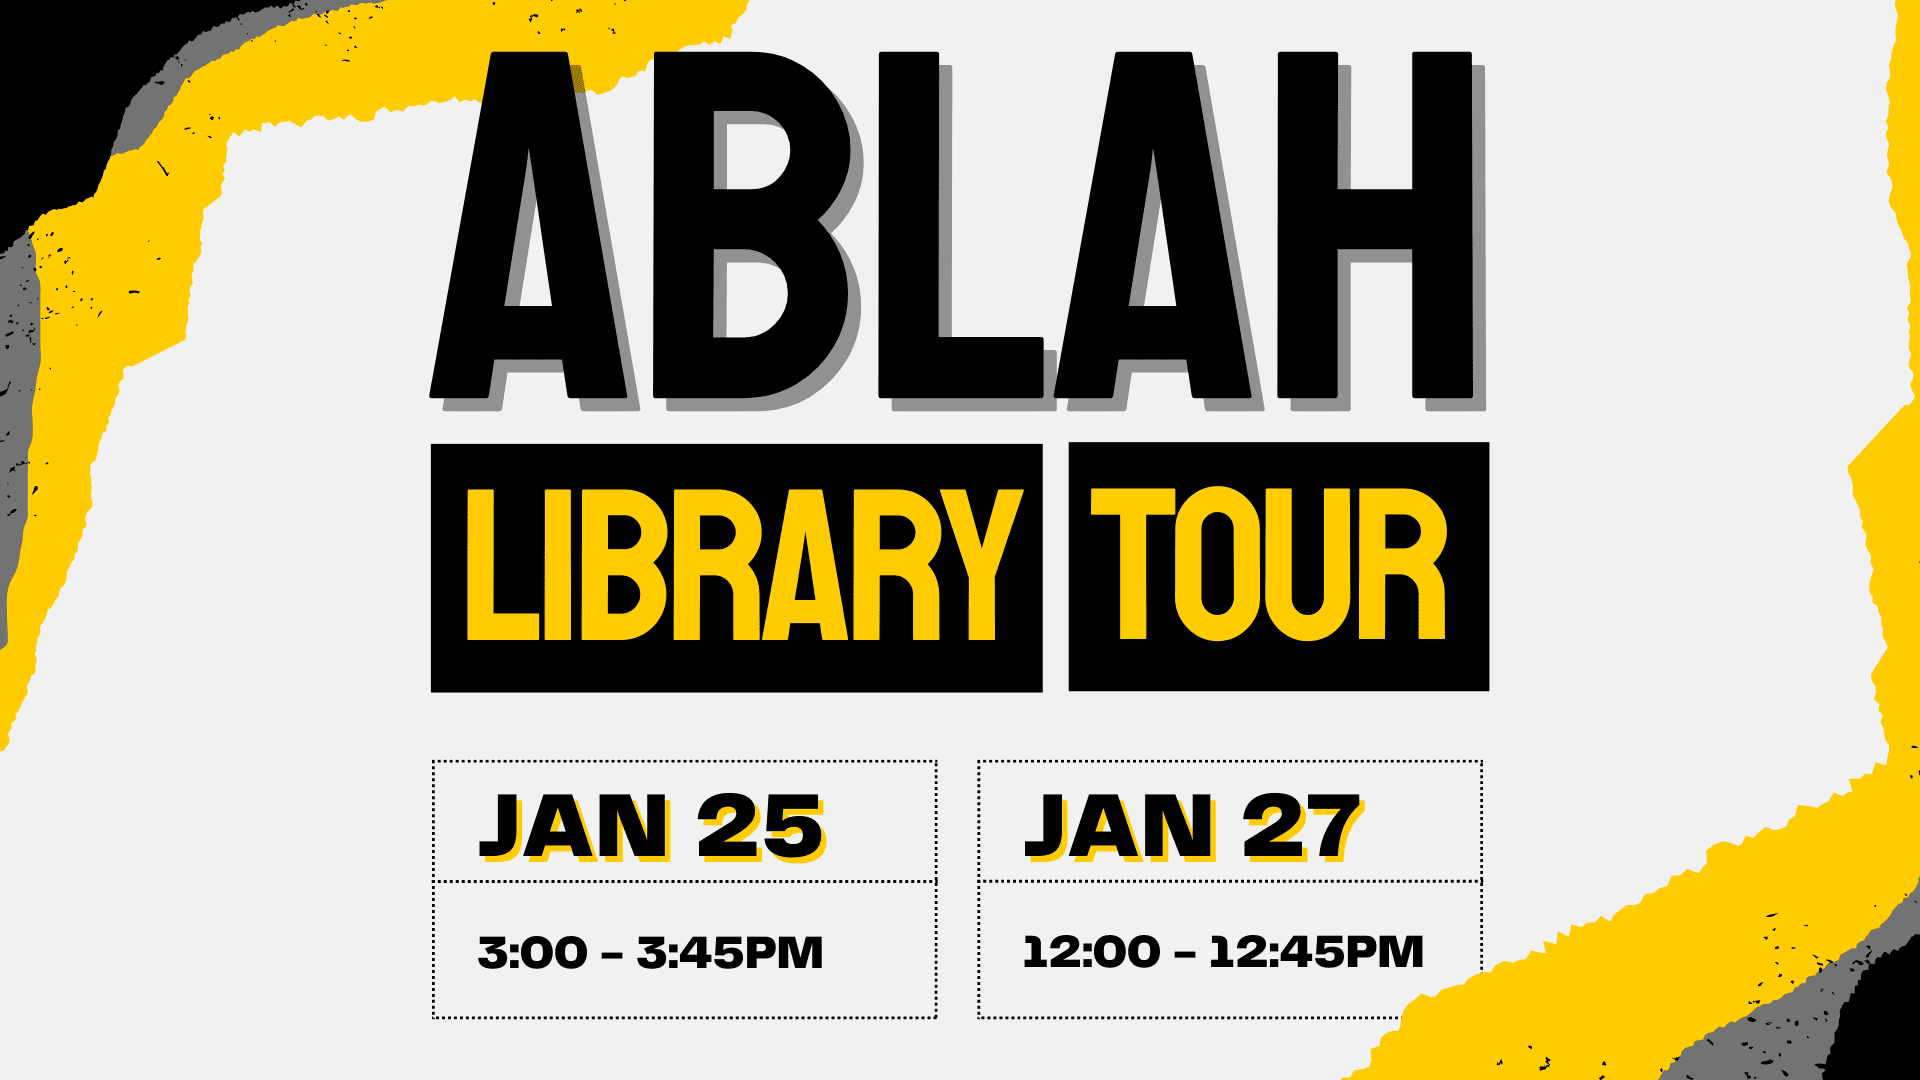 Ablah Library Tour. Jan. 25 3:00 - 3:45PM, Jan. 27 12:00 - 12:45PM